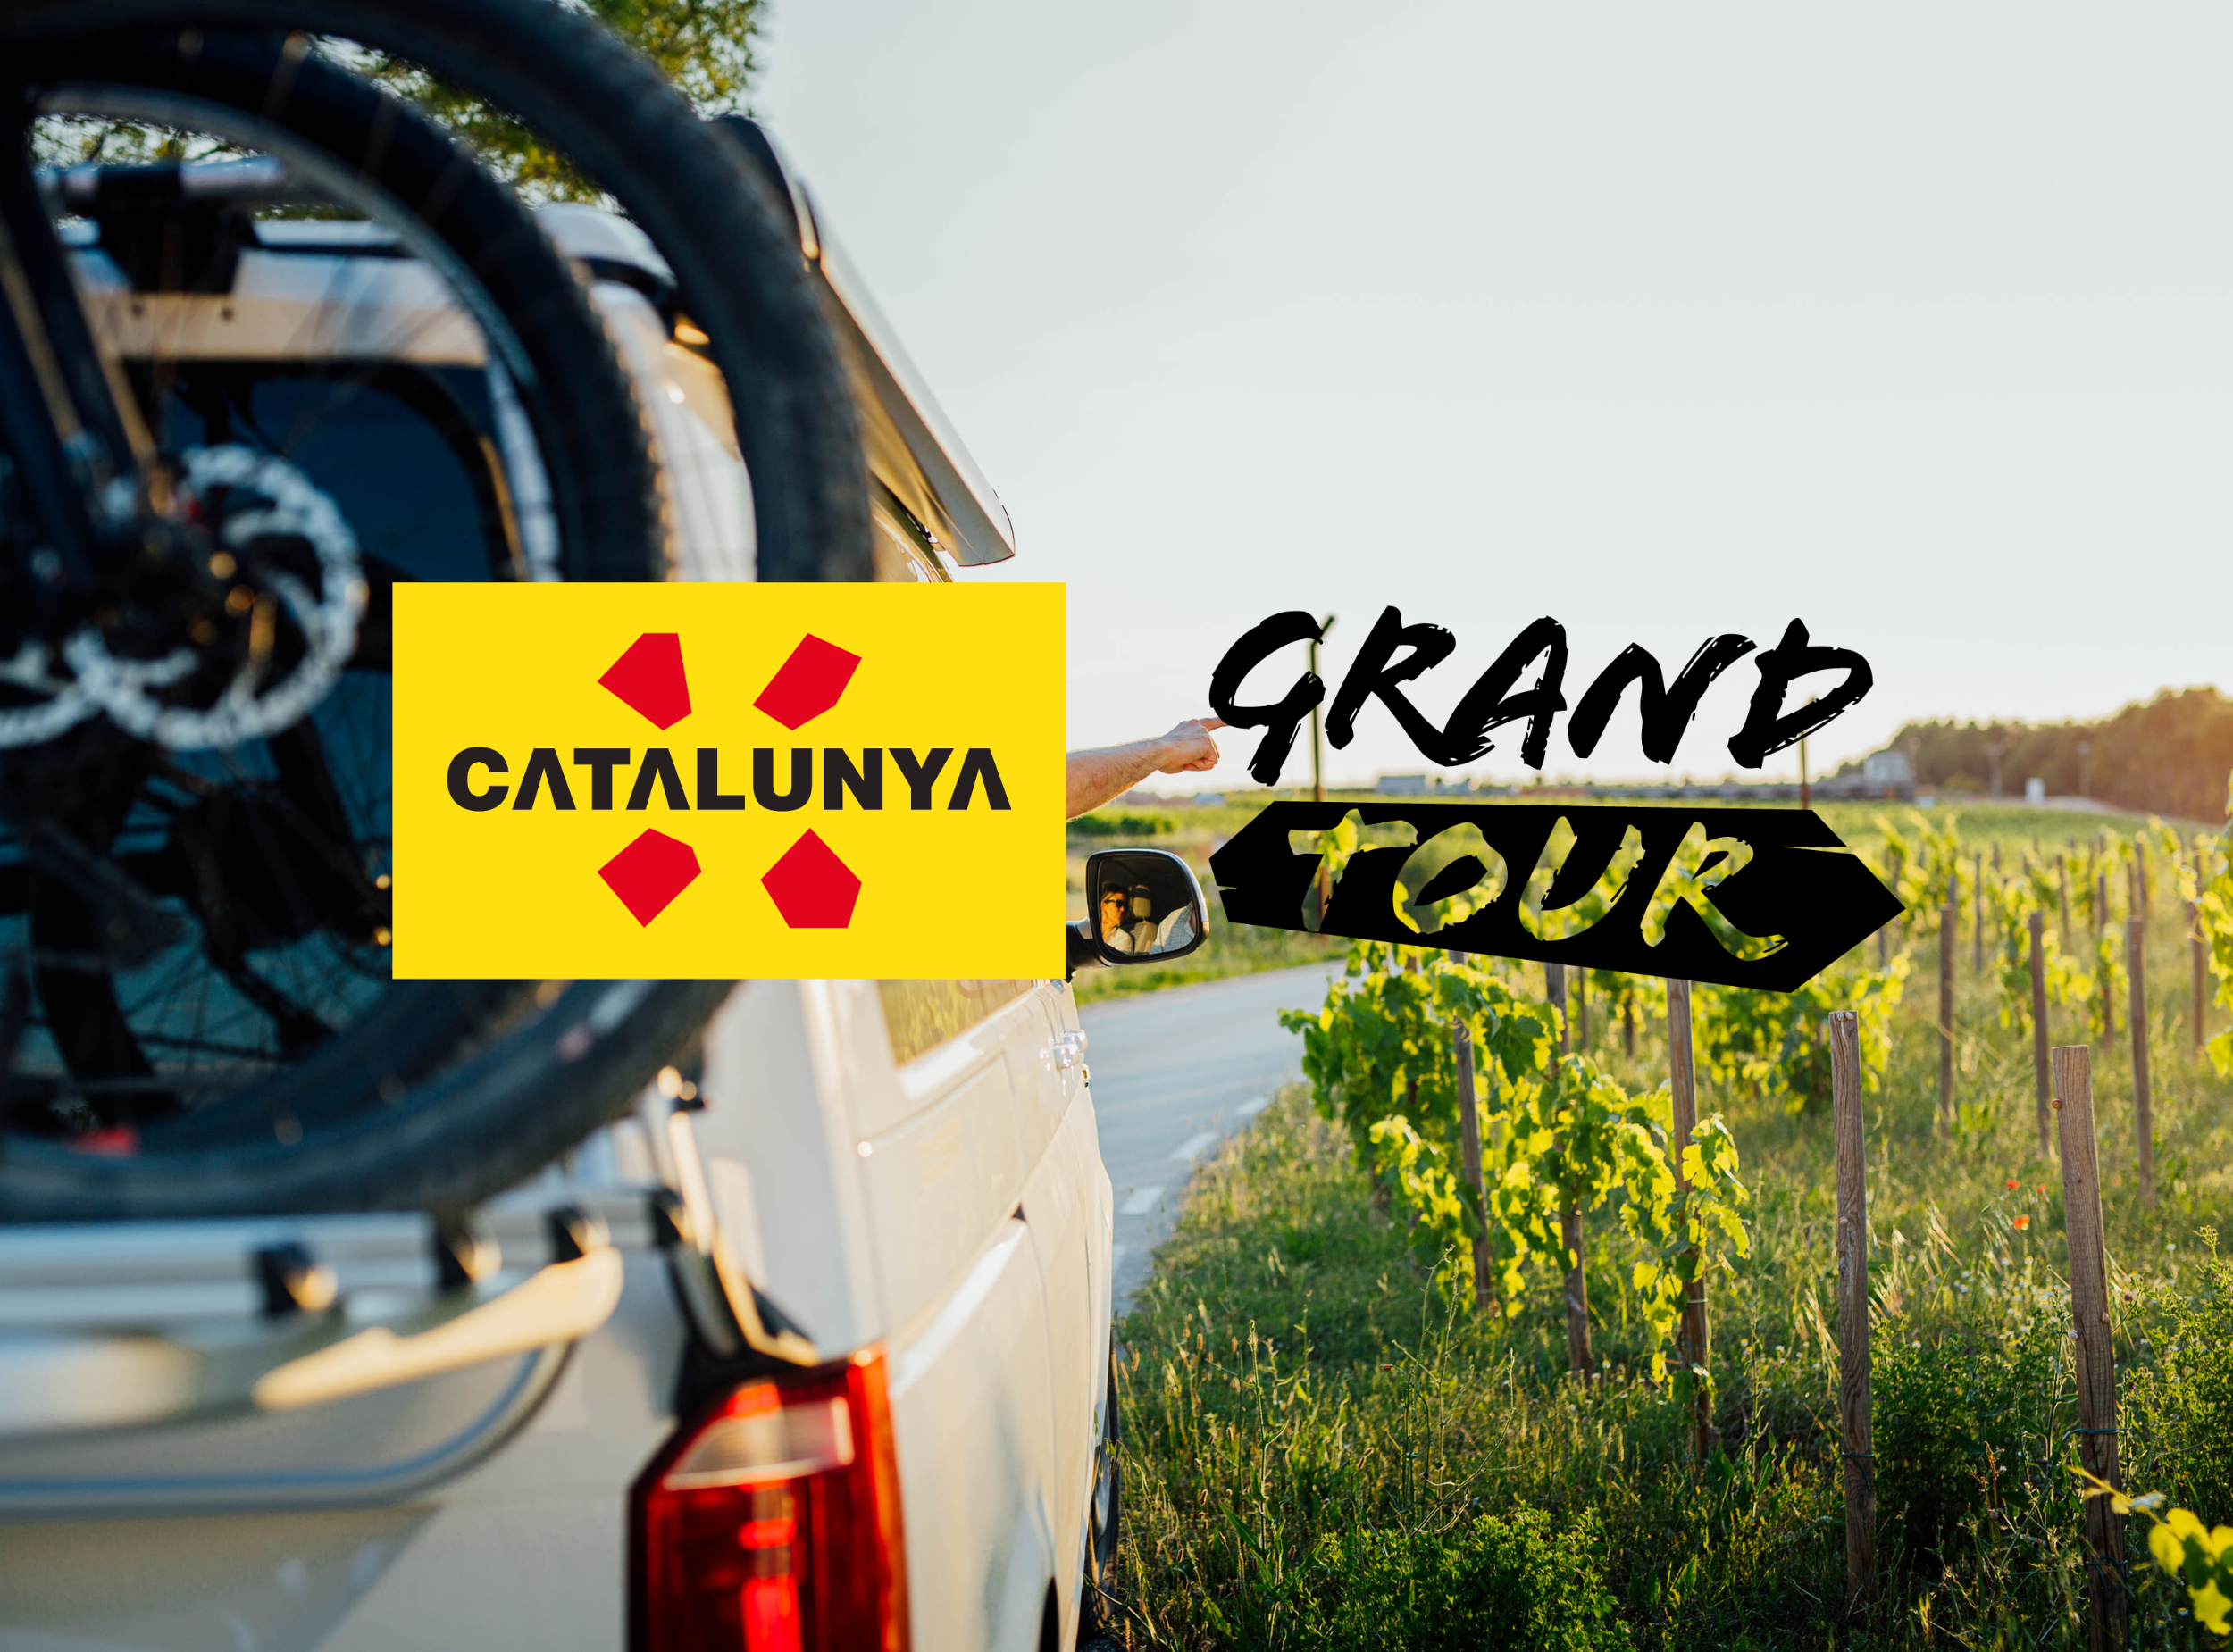 GRANT TOUR DE CATALUNYA